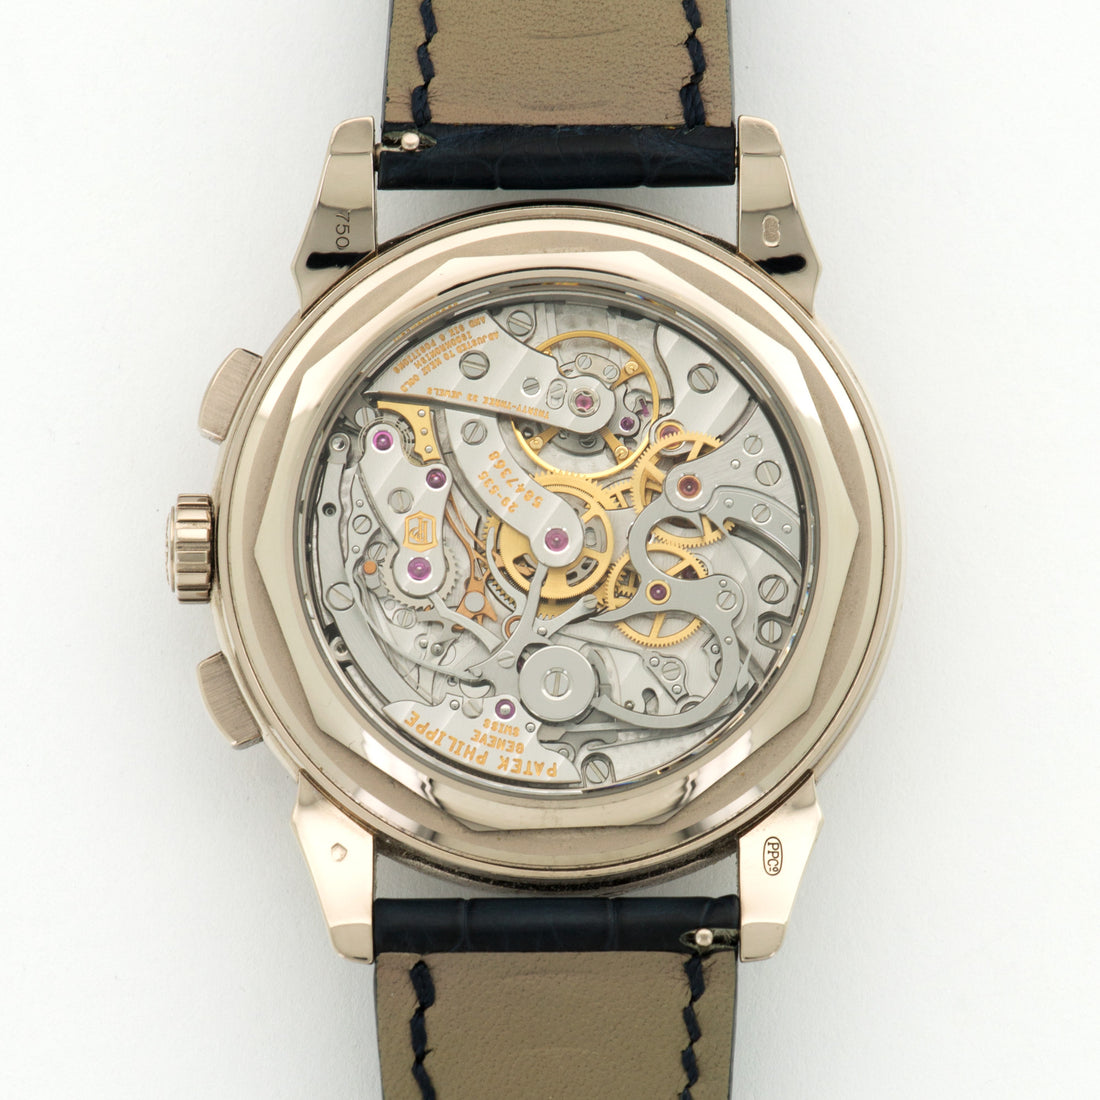 Patek Philippe White Gold Perpetual Calendar Watch Ref. 5270